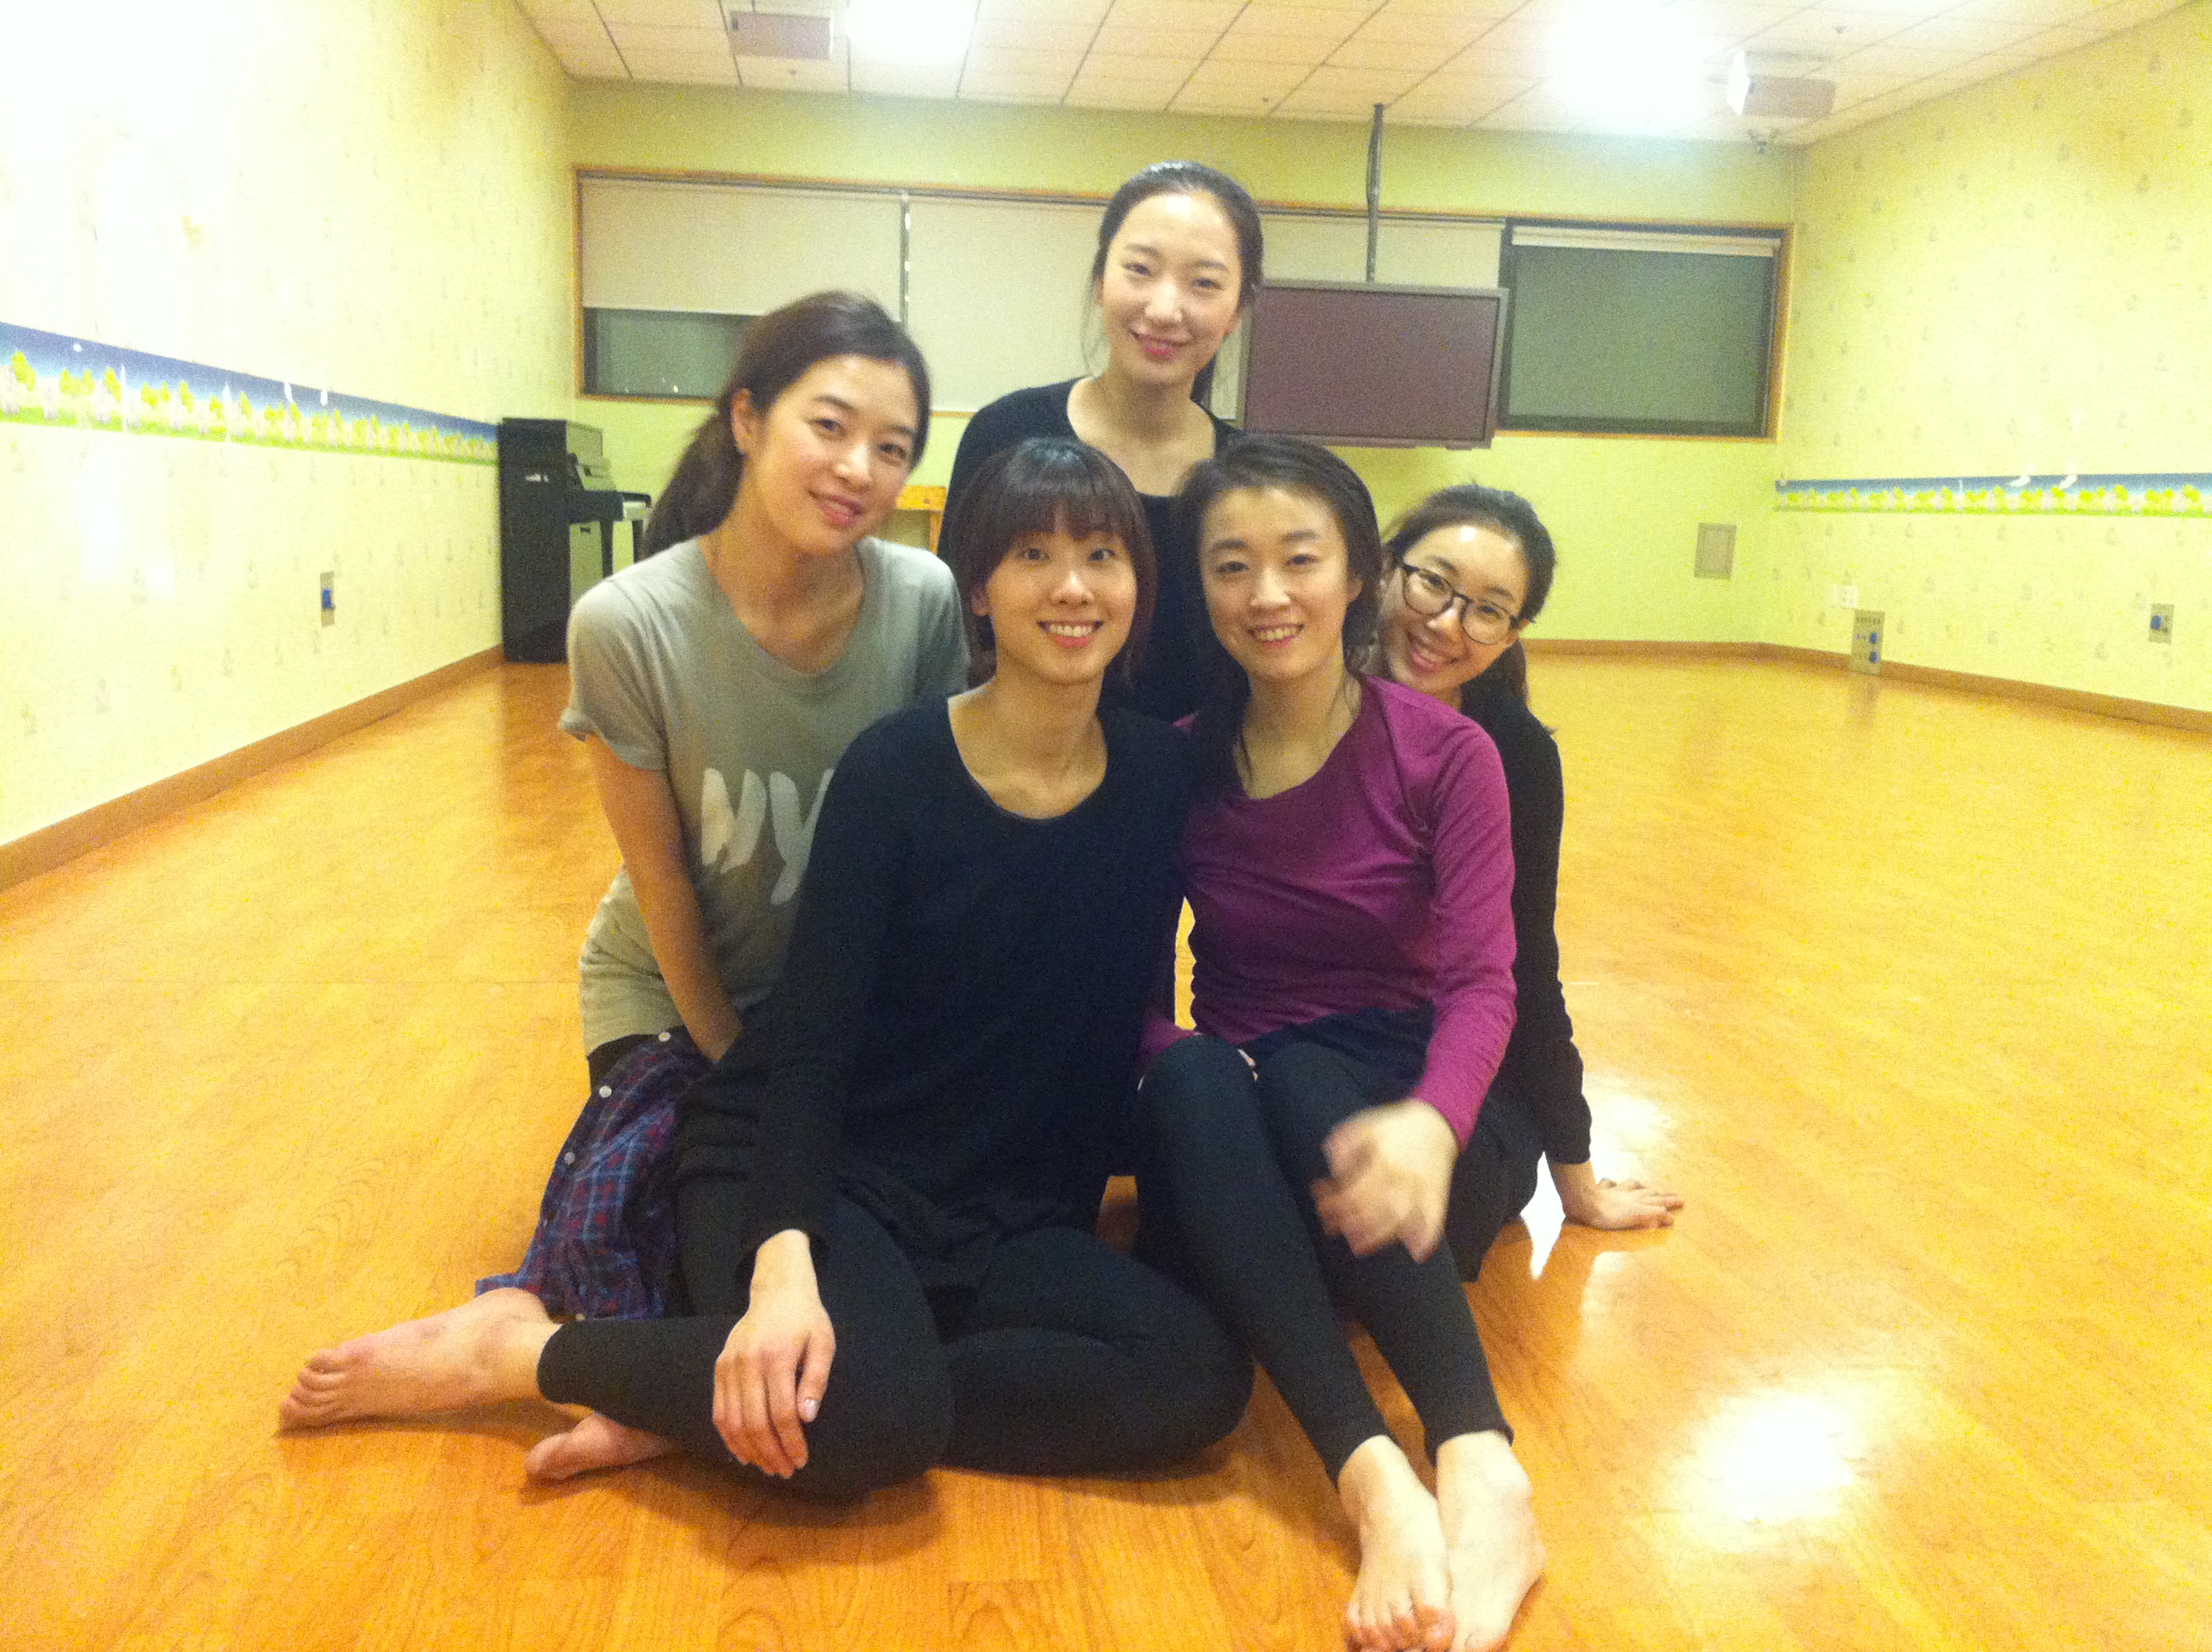 사진 001.jpg : 저희는 댄스문화사역팀 ACTS입니다! (발레팀, 씨씨엠댄스팀이 아닙니다ㅠ)